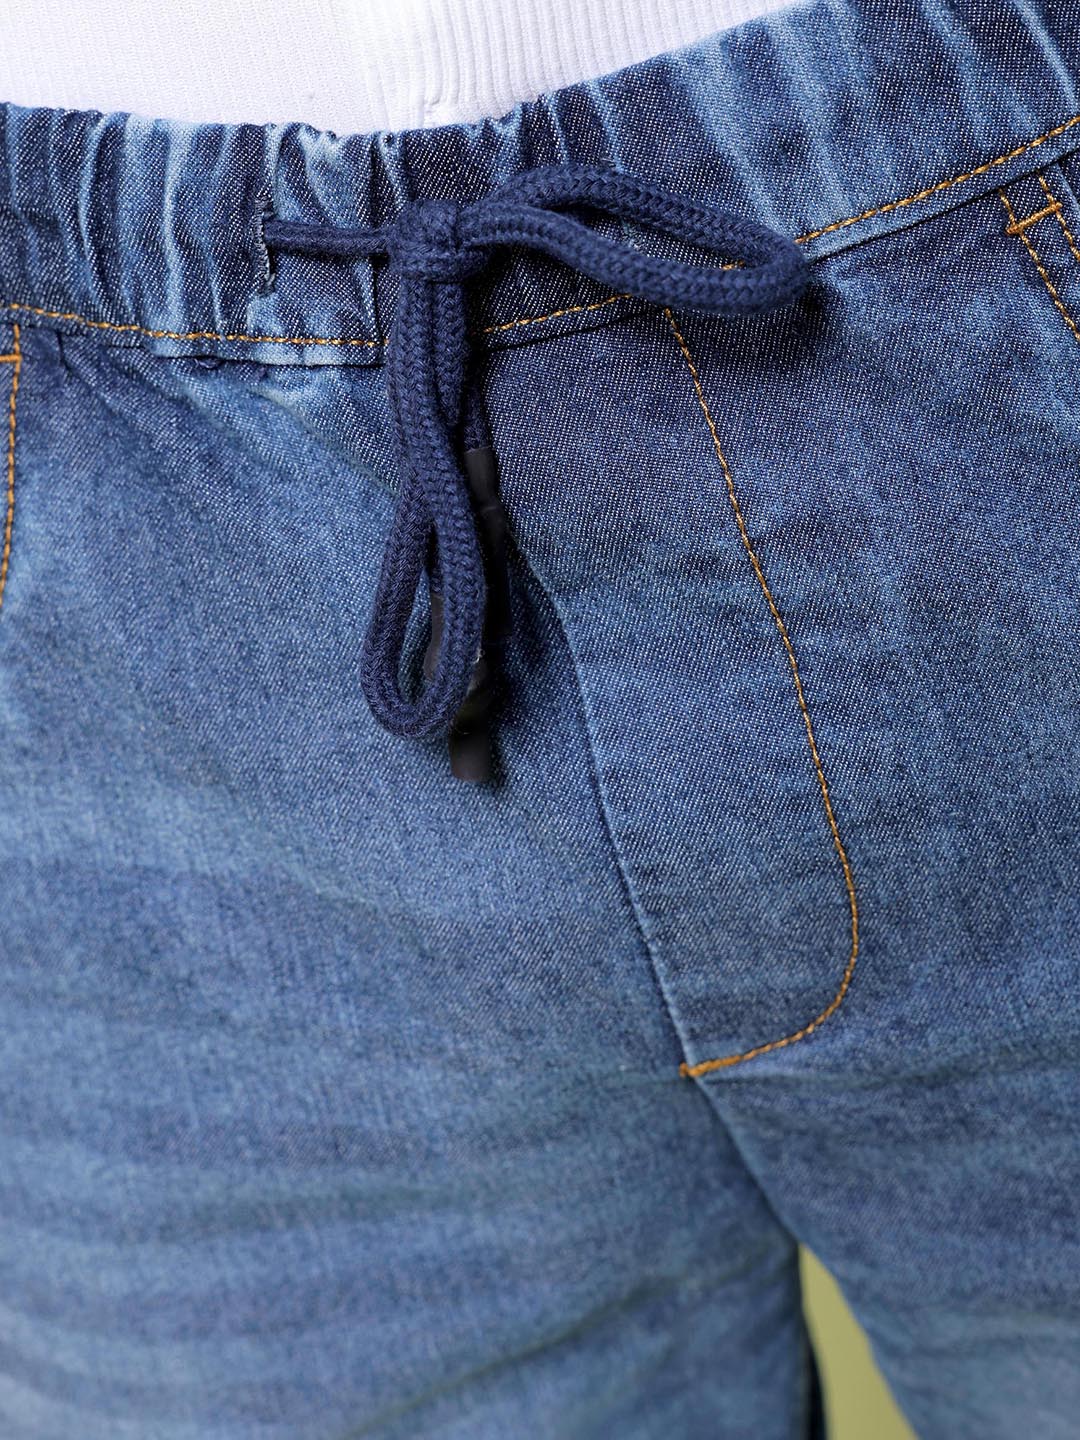 Shop Men Regular Fit Jeans Online.